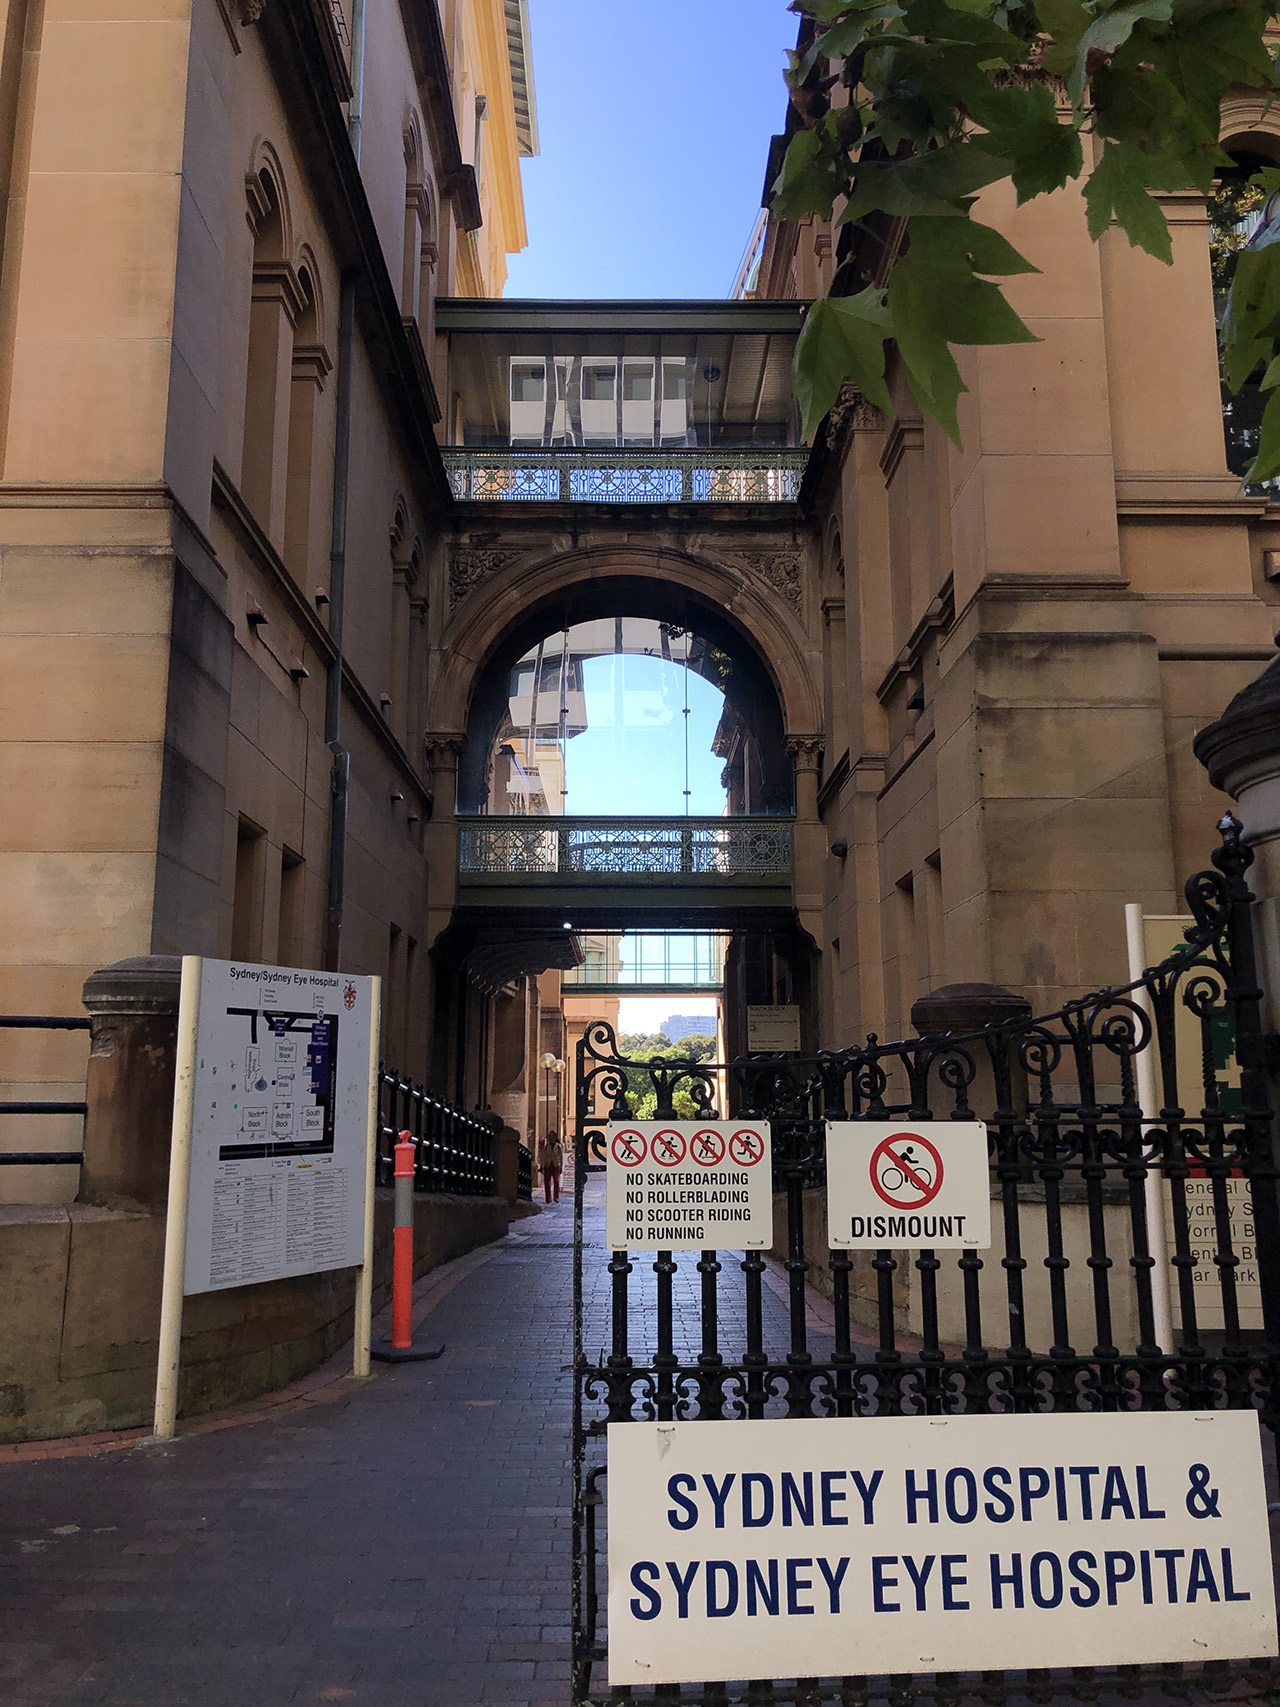 Sydney Hospital and Sydney Eye Hospital